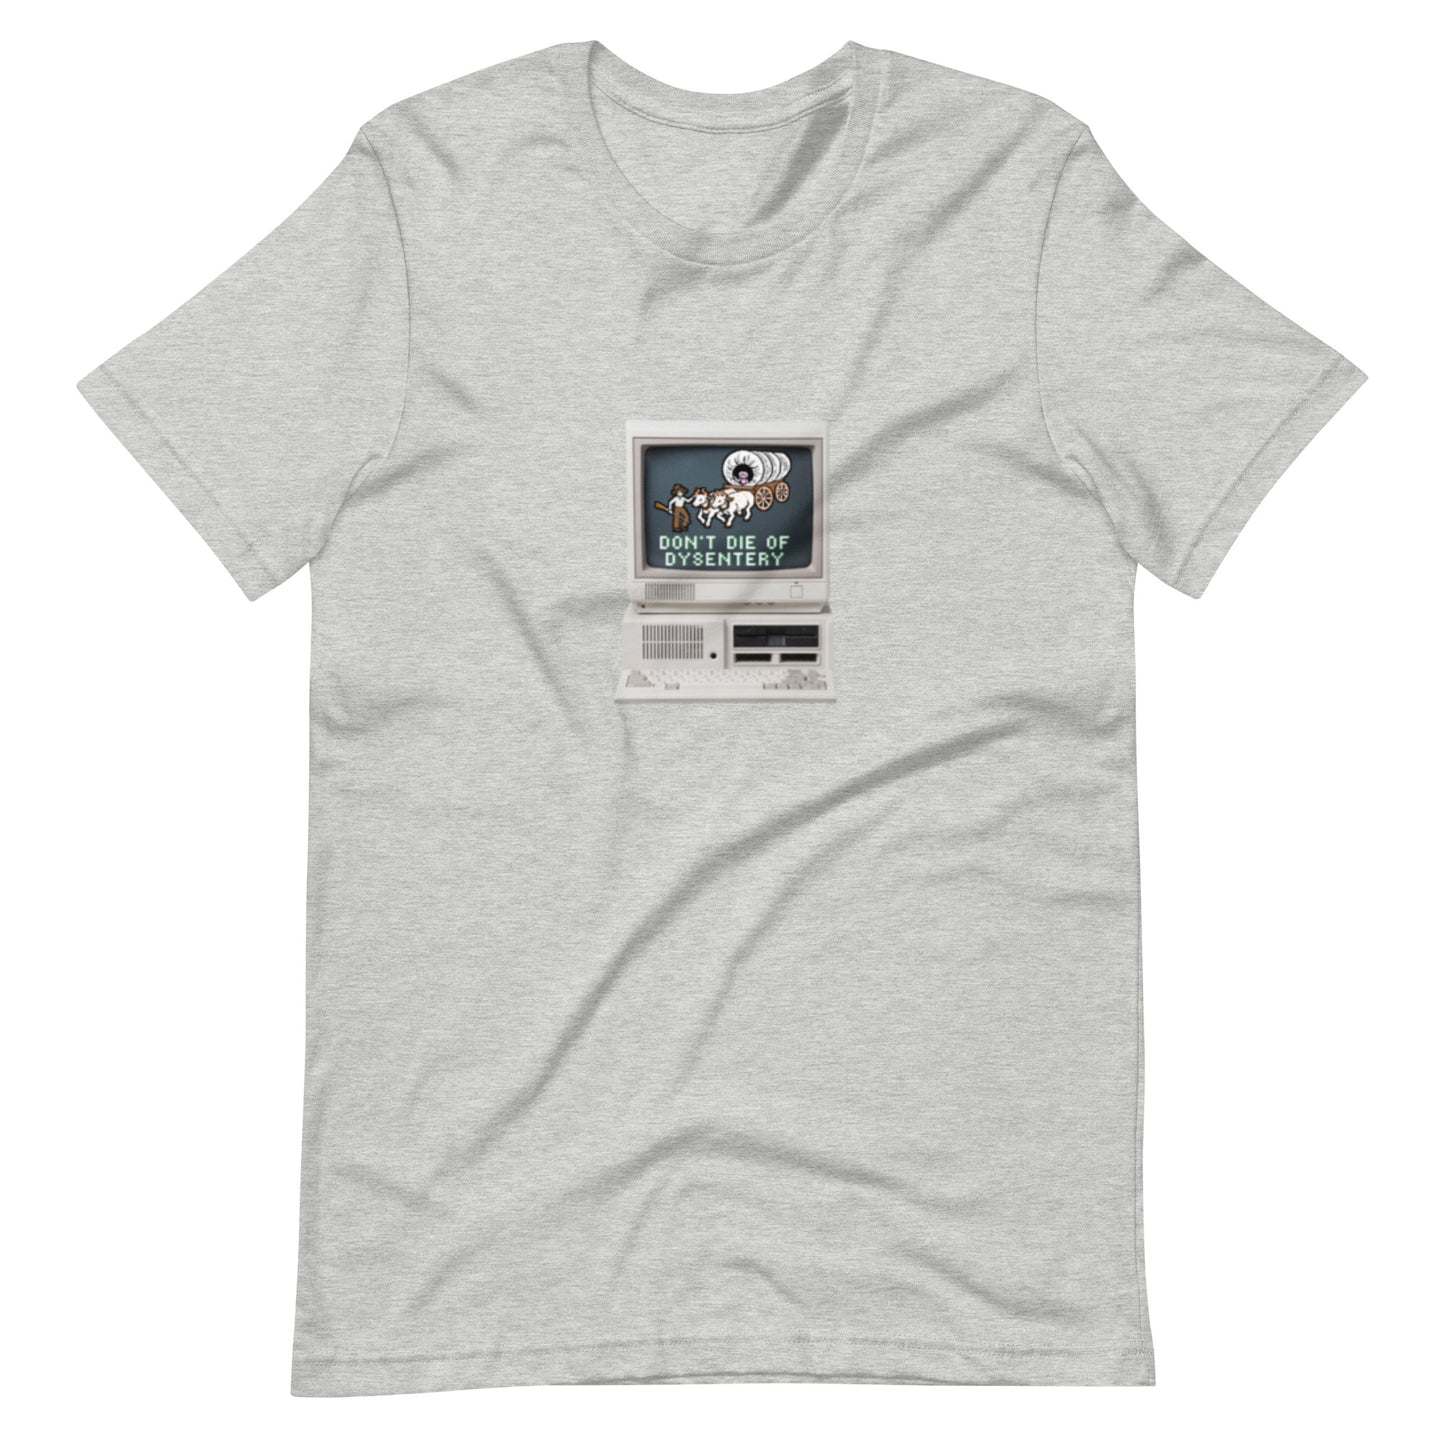 Oregon Trail Retro Vibes t-shirt